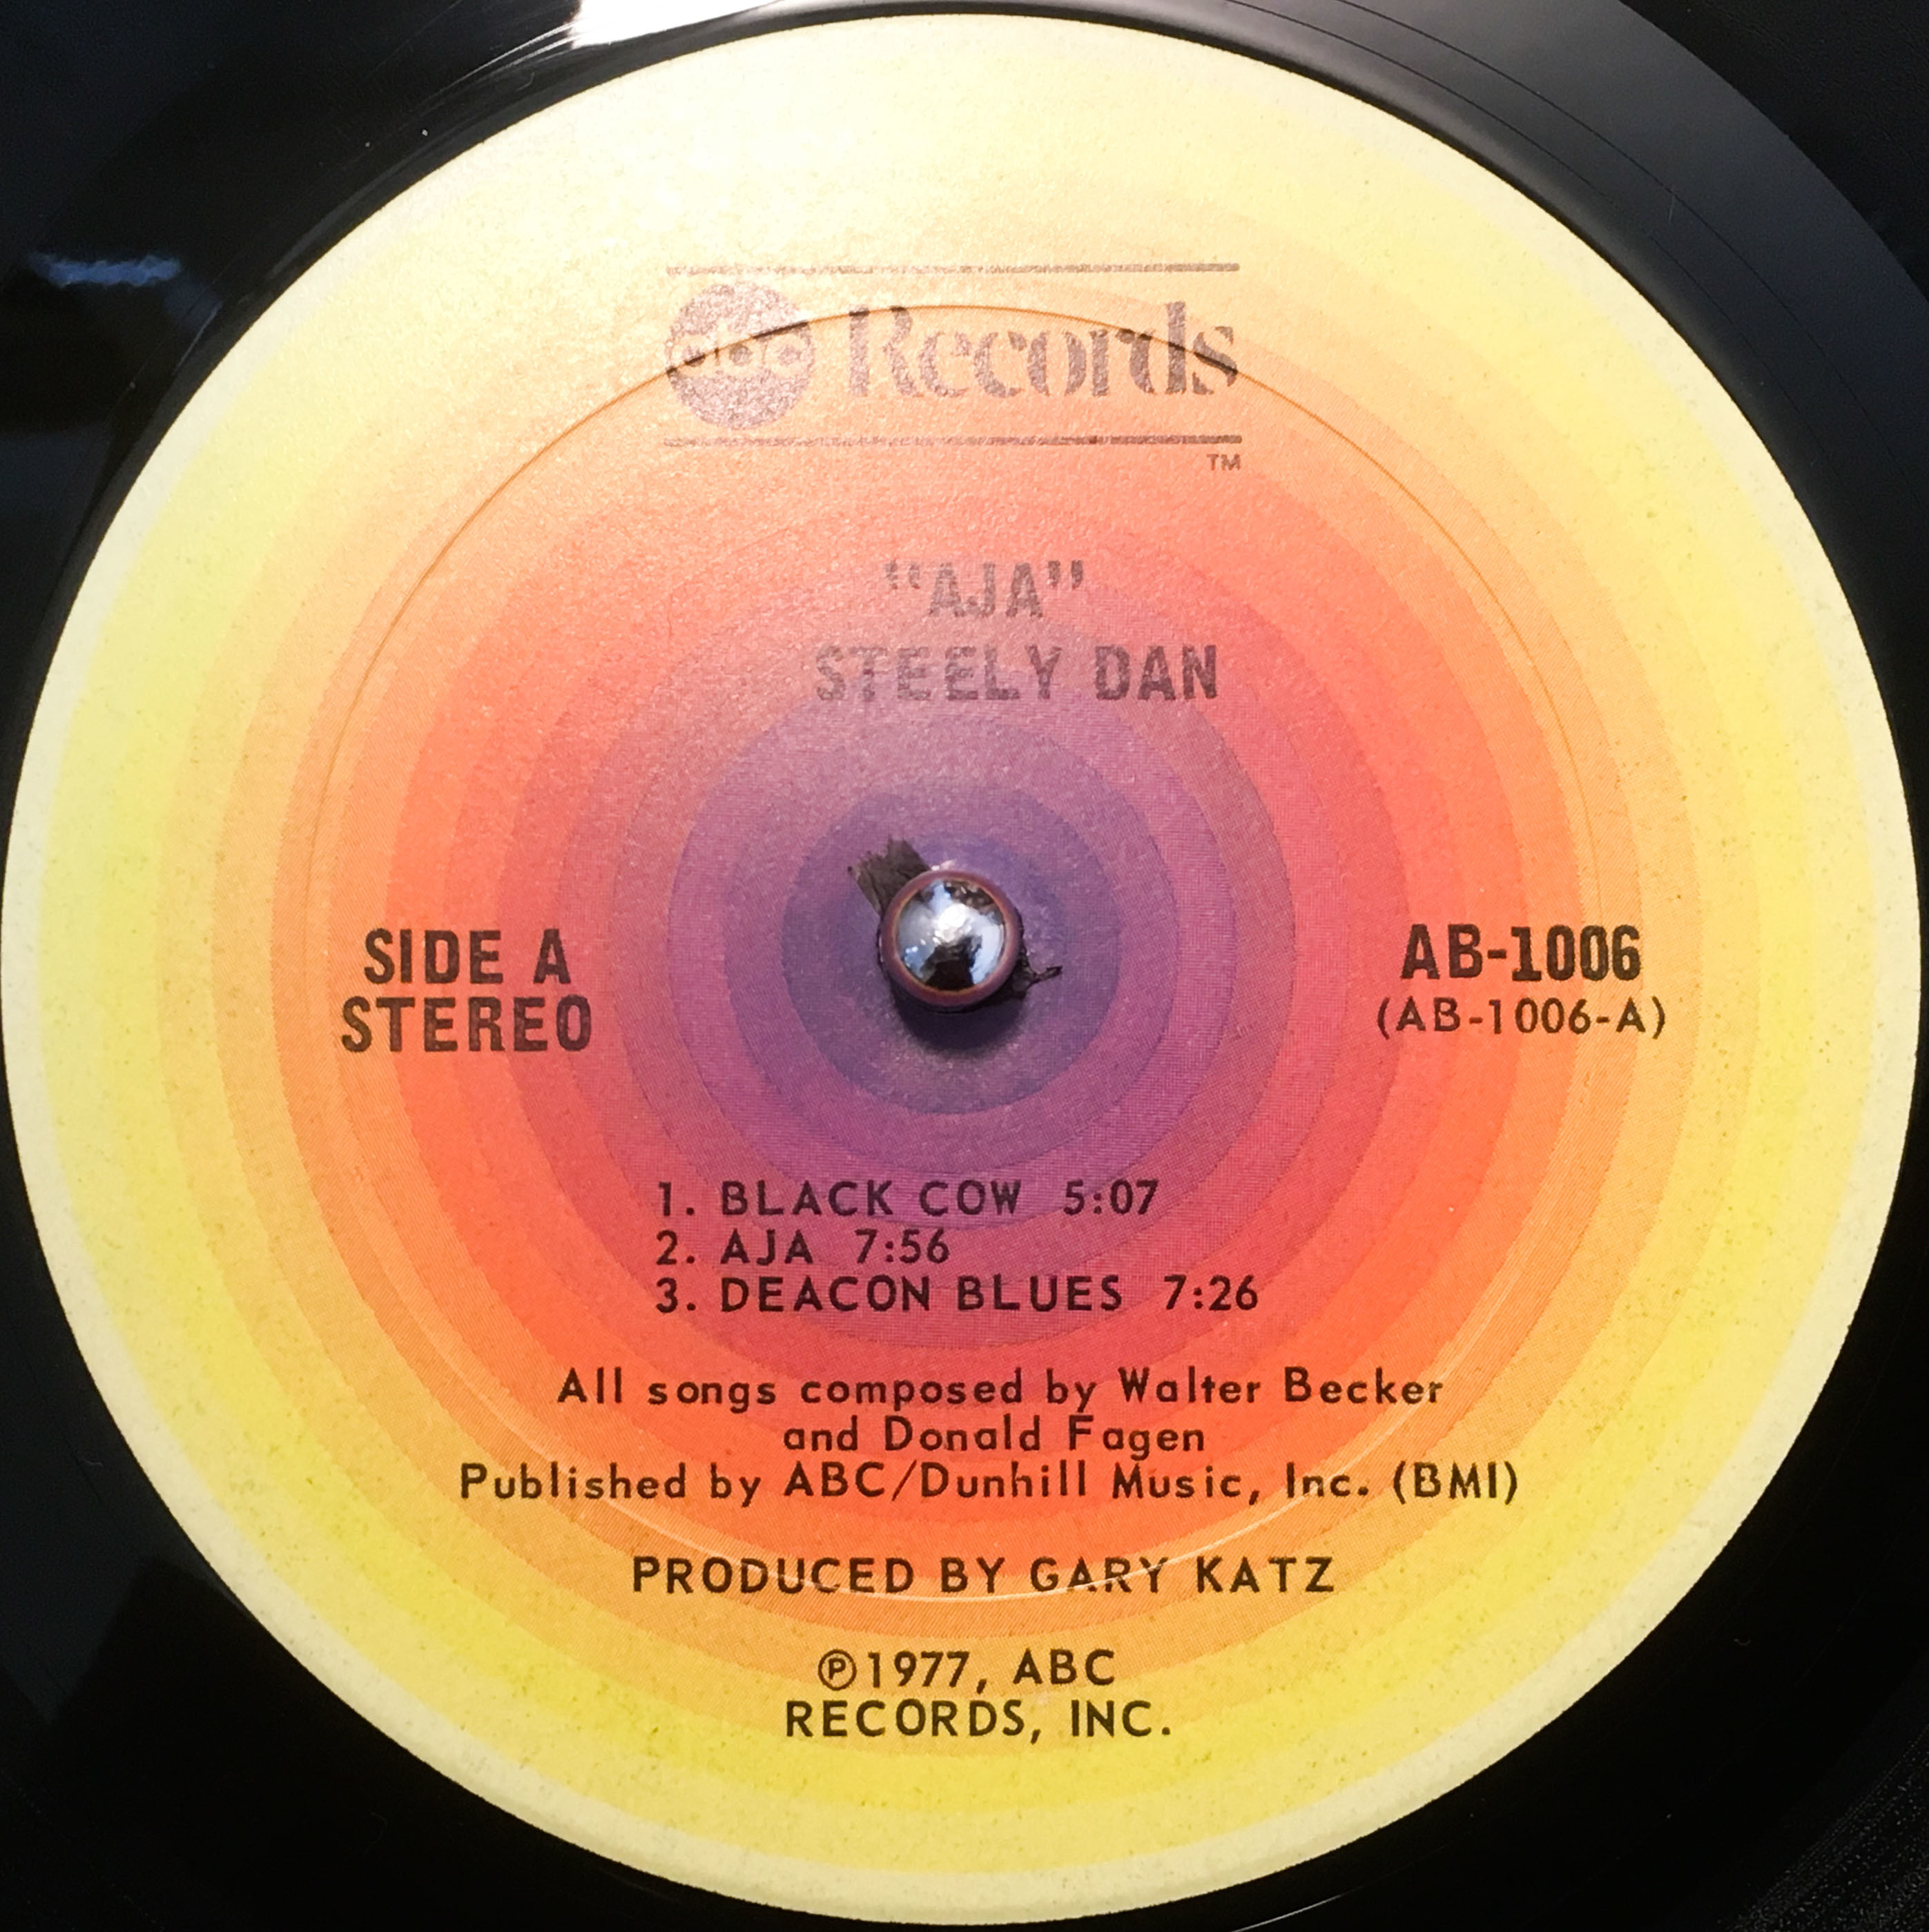 Steely Dan - Ajaのオリジナル盤 - Steely Dan